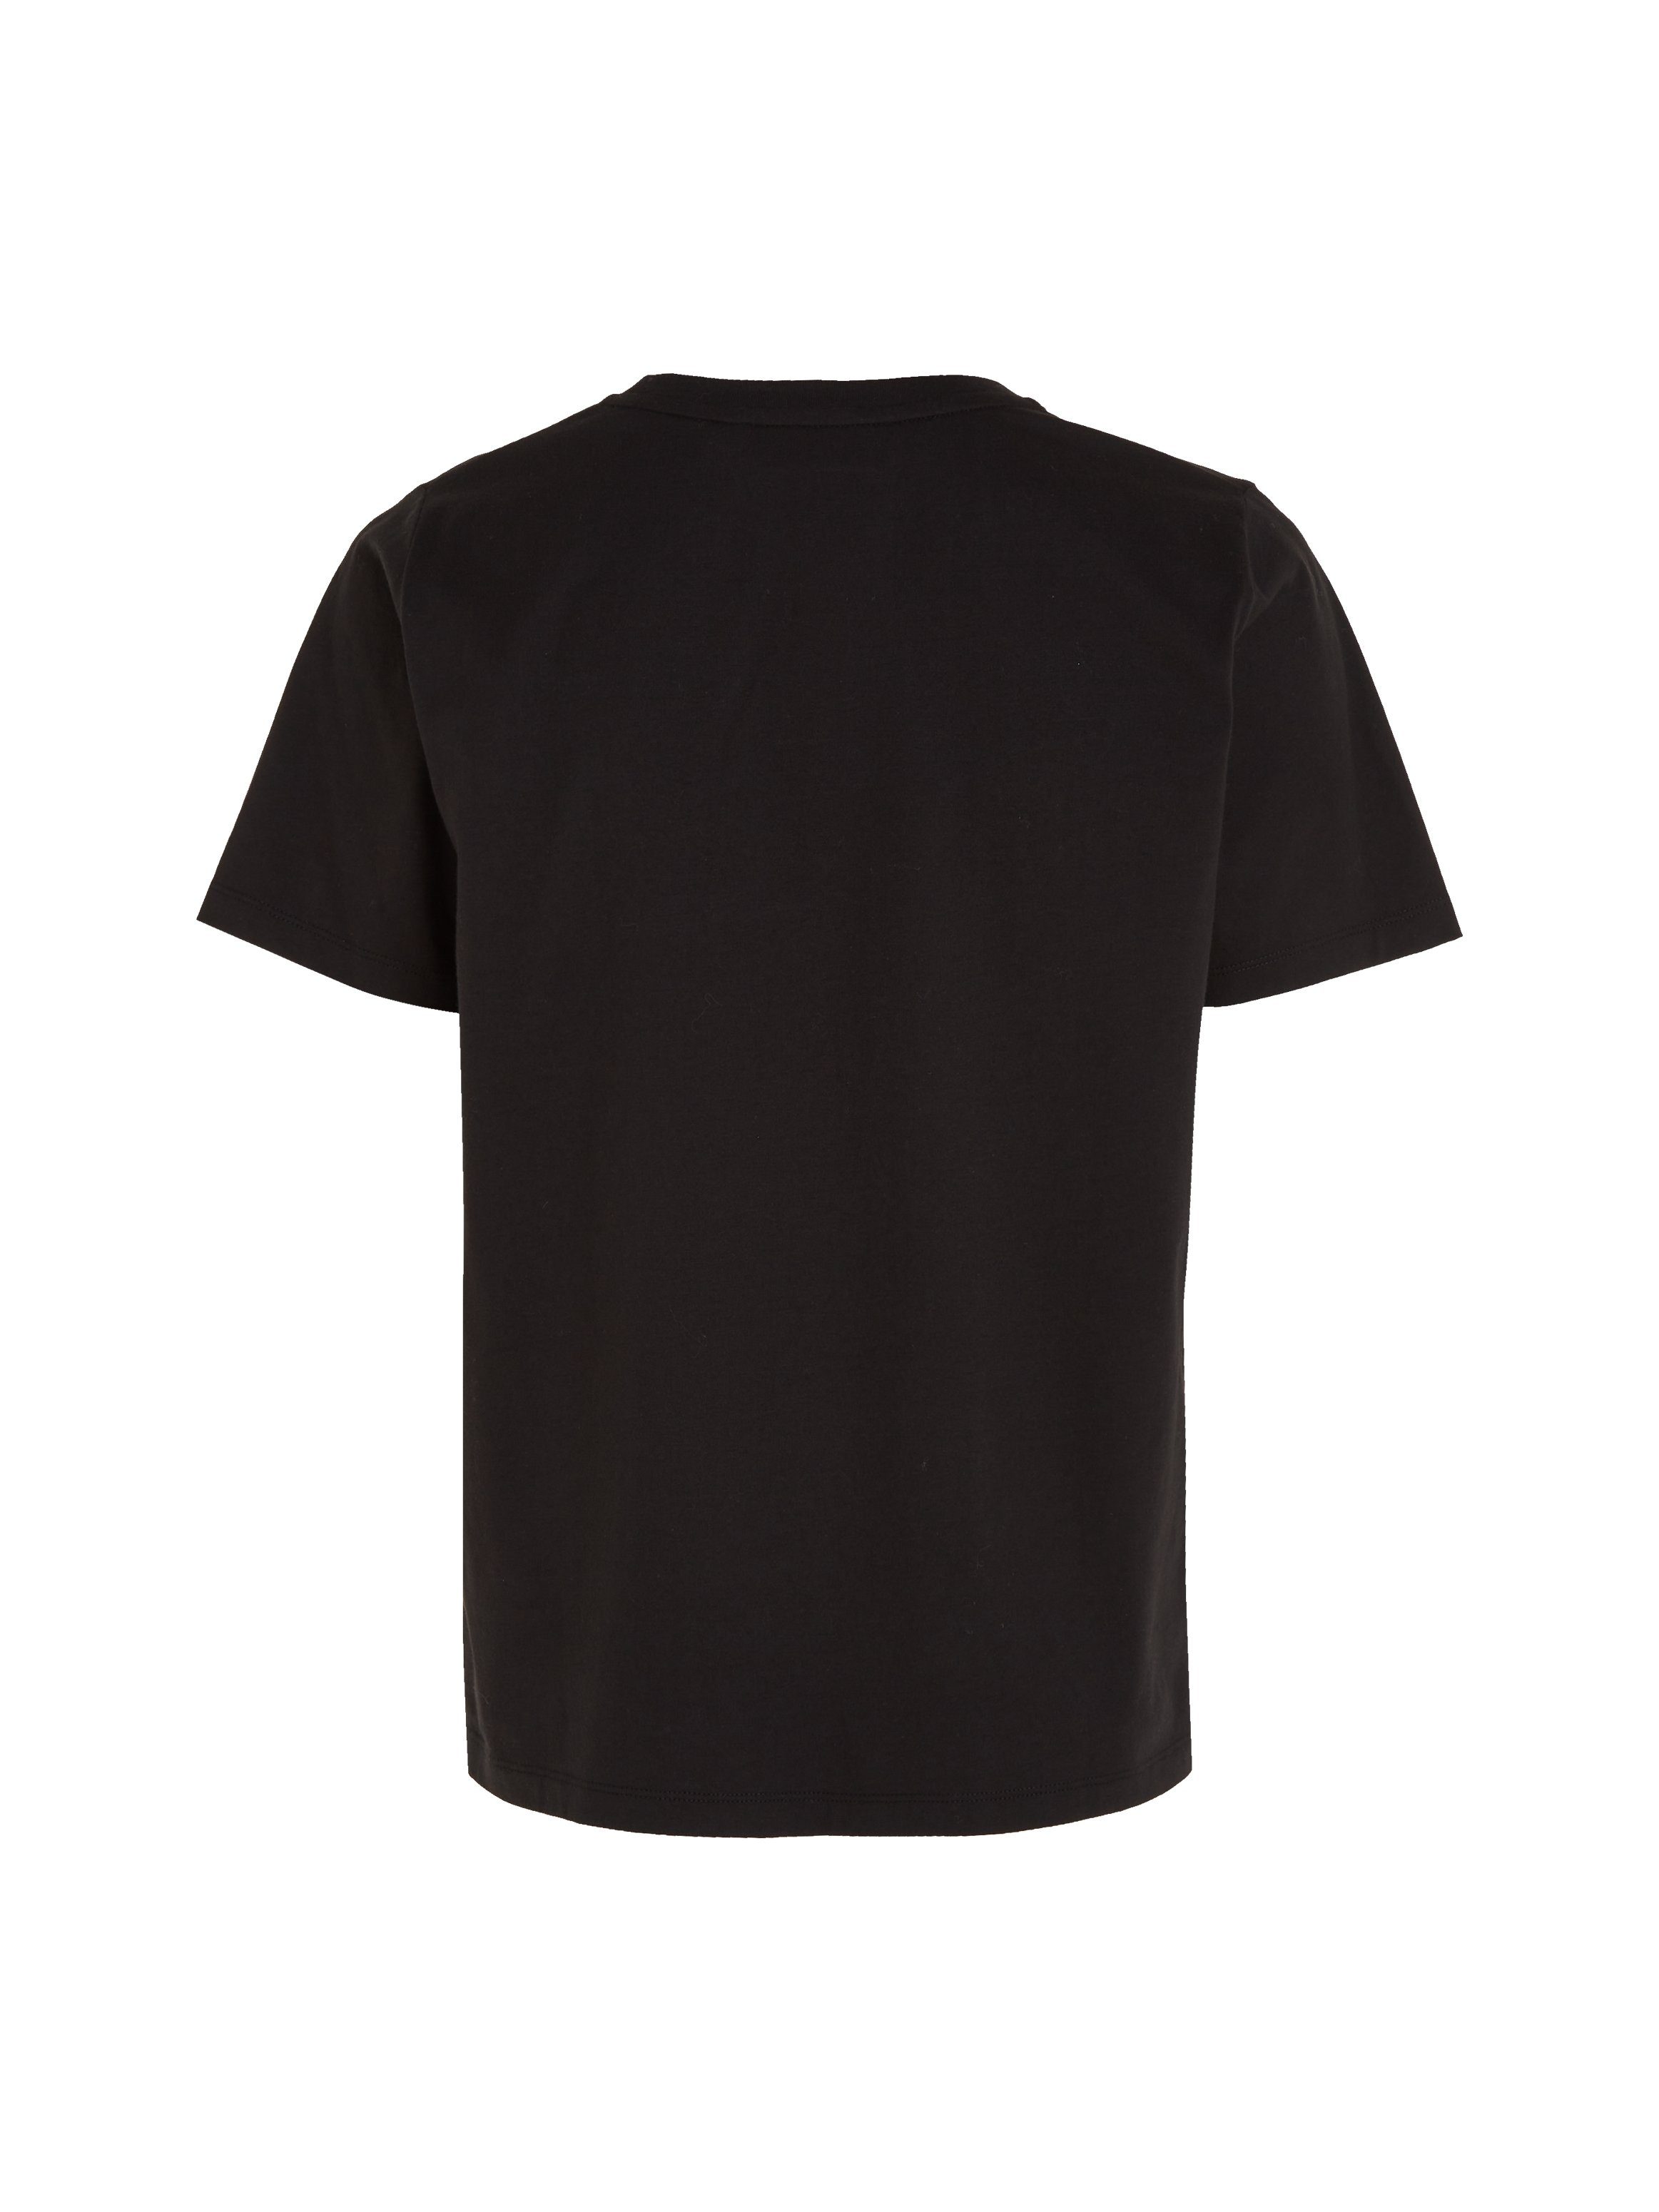 Klein T-Shirt LOGO Ck-Black T-SHIRT reiner Calvin Baumwolle MICRO aus